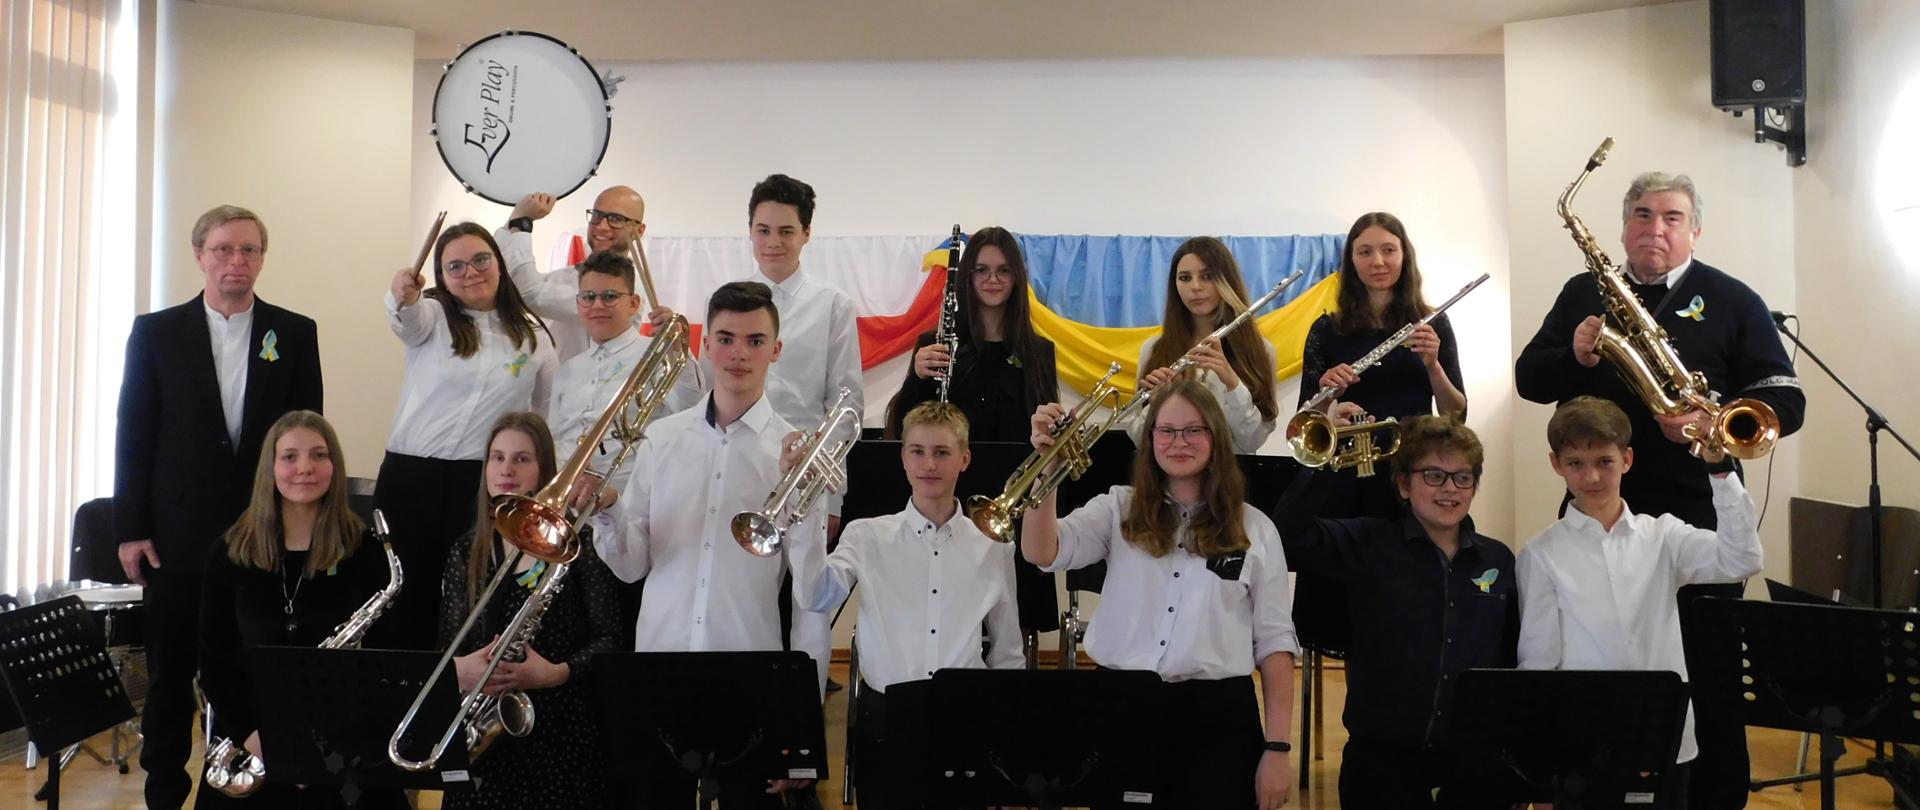 zdjęcie przedstawia uczniów szkoły z instrumentami dętymi: klarnet, saksofon, trąbka, puzon, flet. Po prawej stronie stoi nauczyciel prowadzący orkiestrę, po lewej akompaniator, w oddali widać nauczyciela perkusji z bębnem.